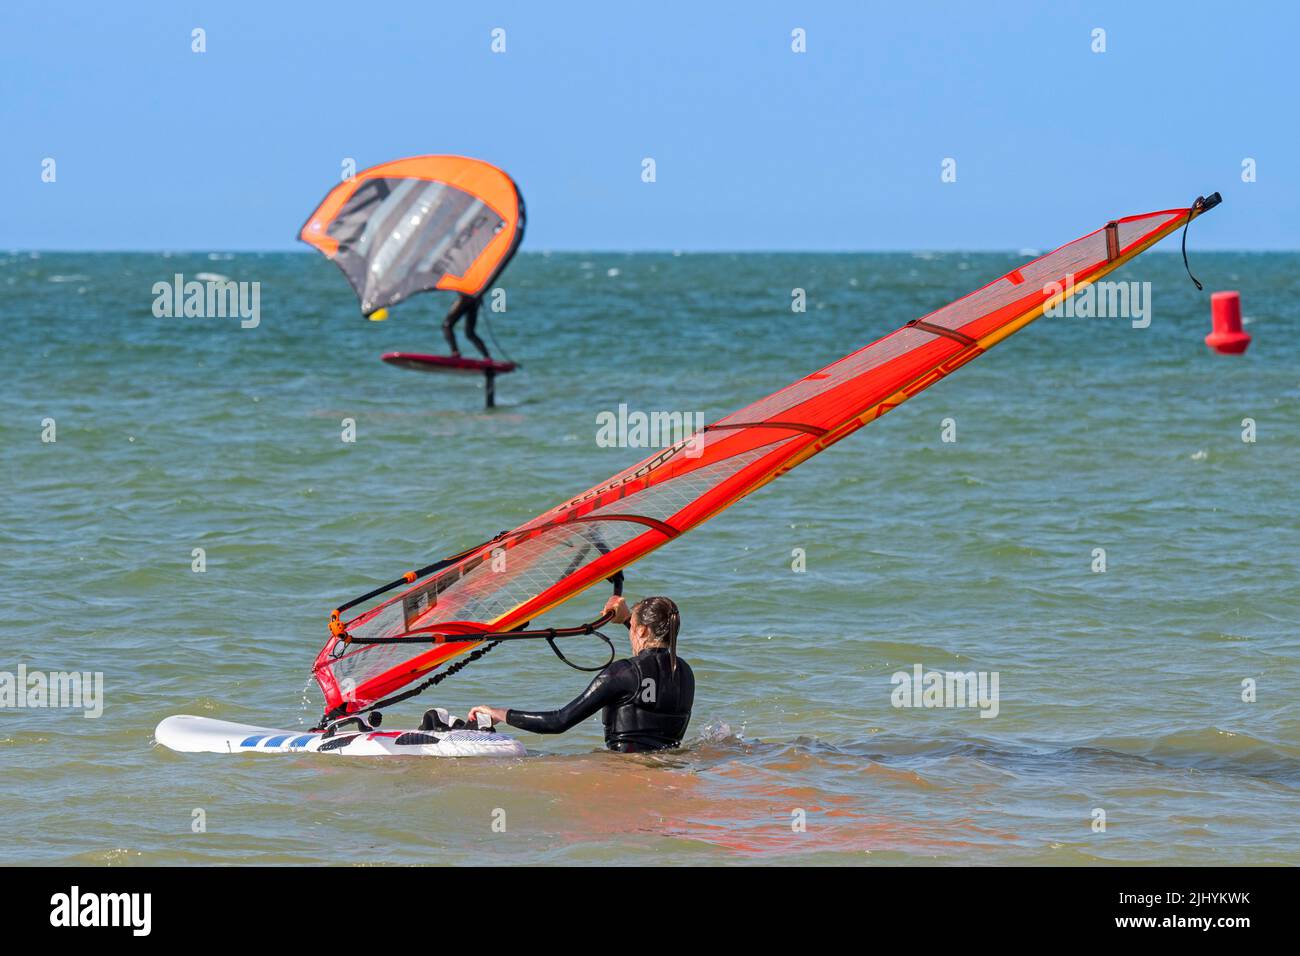 Windsurferin beim Einstieg ins Wasser und Wingboarderin / Wing Boarderin auf Foilboard / Hydrofoil Board Surfen mit aufblasbarem Flügel an der Nordsee Stockfoto